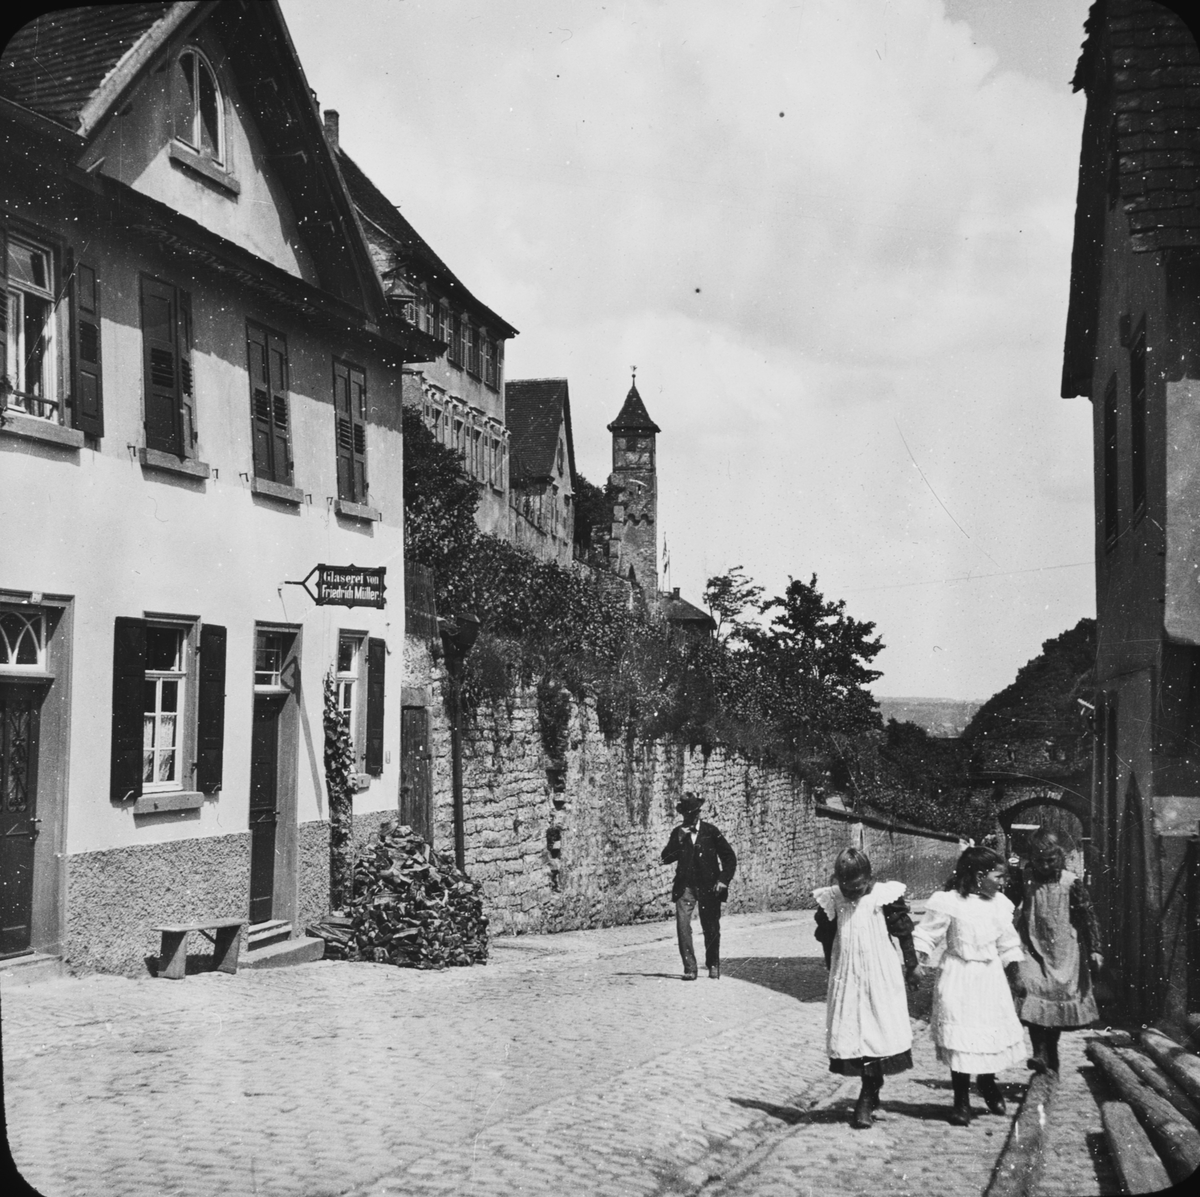 Skioptikonbild med motiv från Bad Wimpfen.
Bilden har förvarats i kartong märkt: Resan 1907. Wimpfen 9. 01. Text på bild: "Wimpfen am Berg".